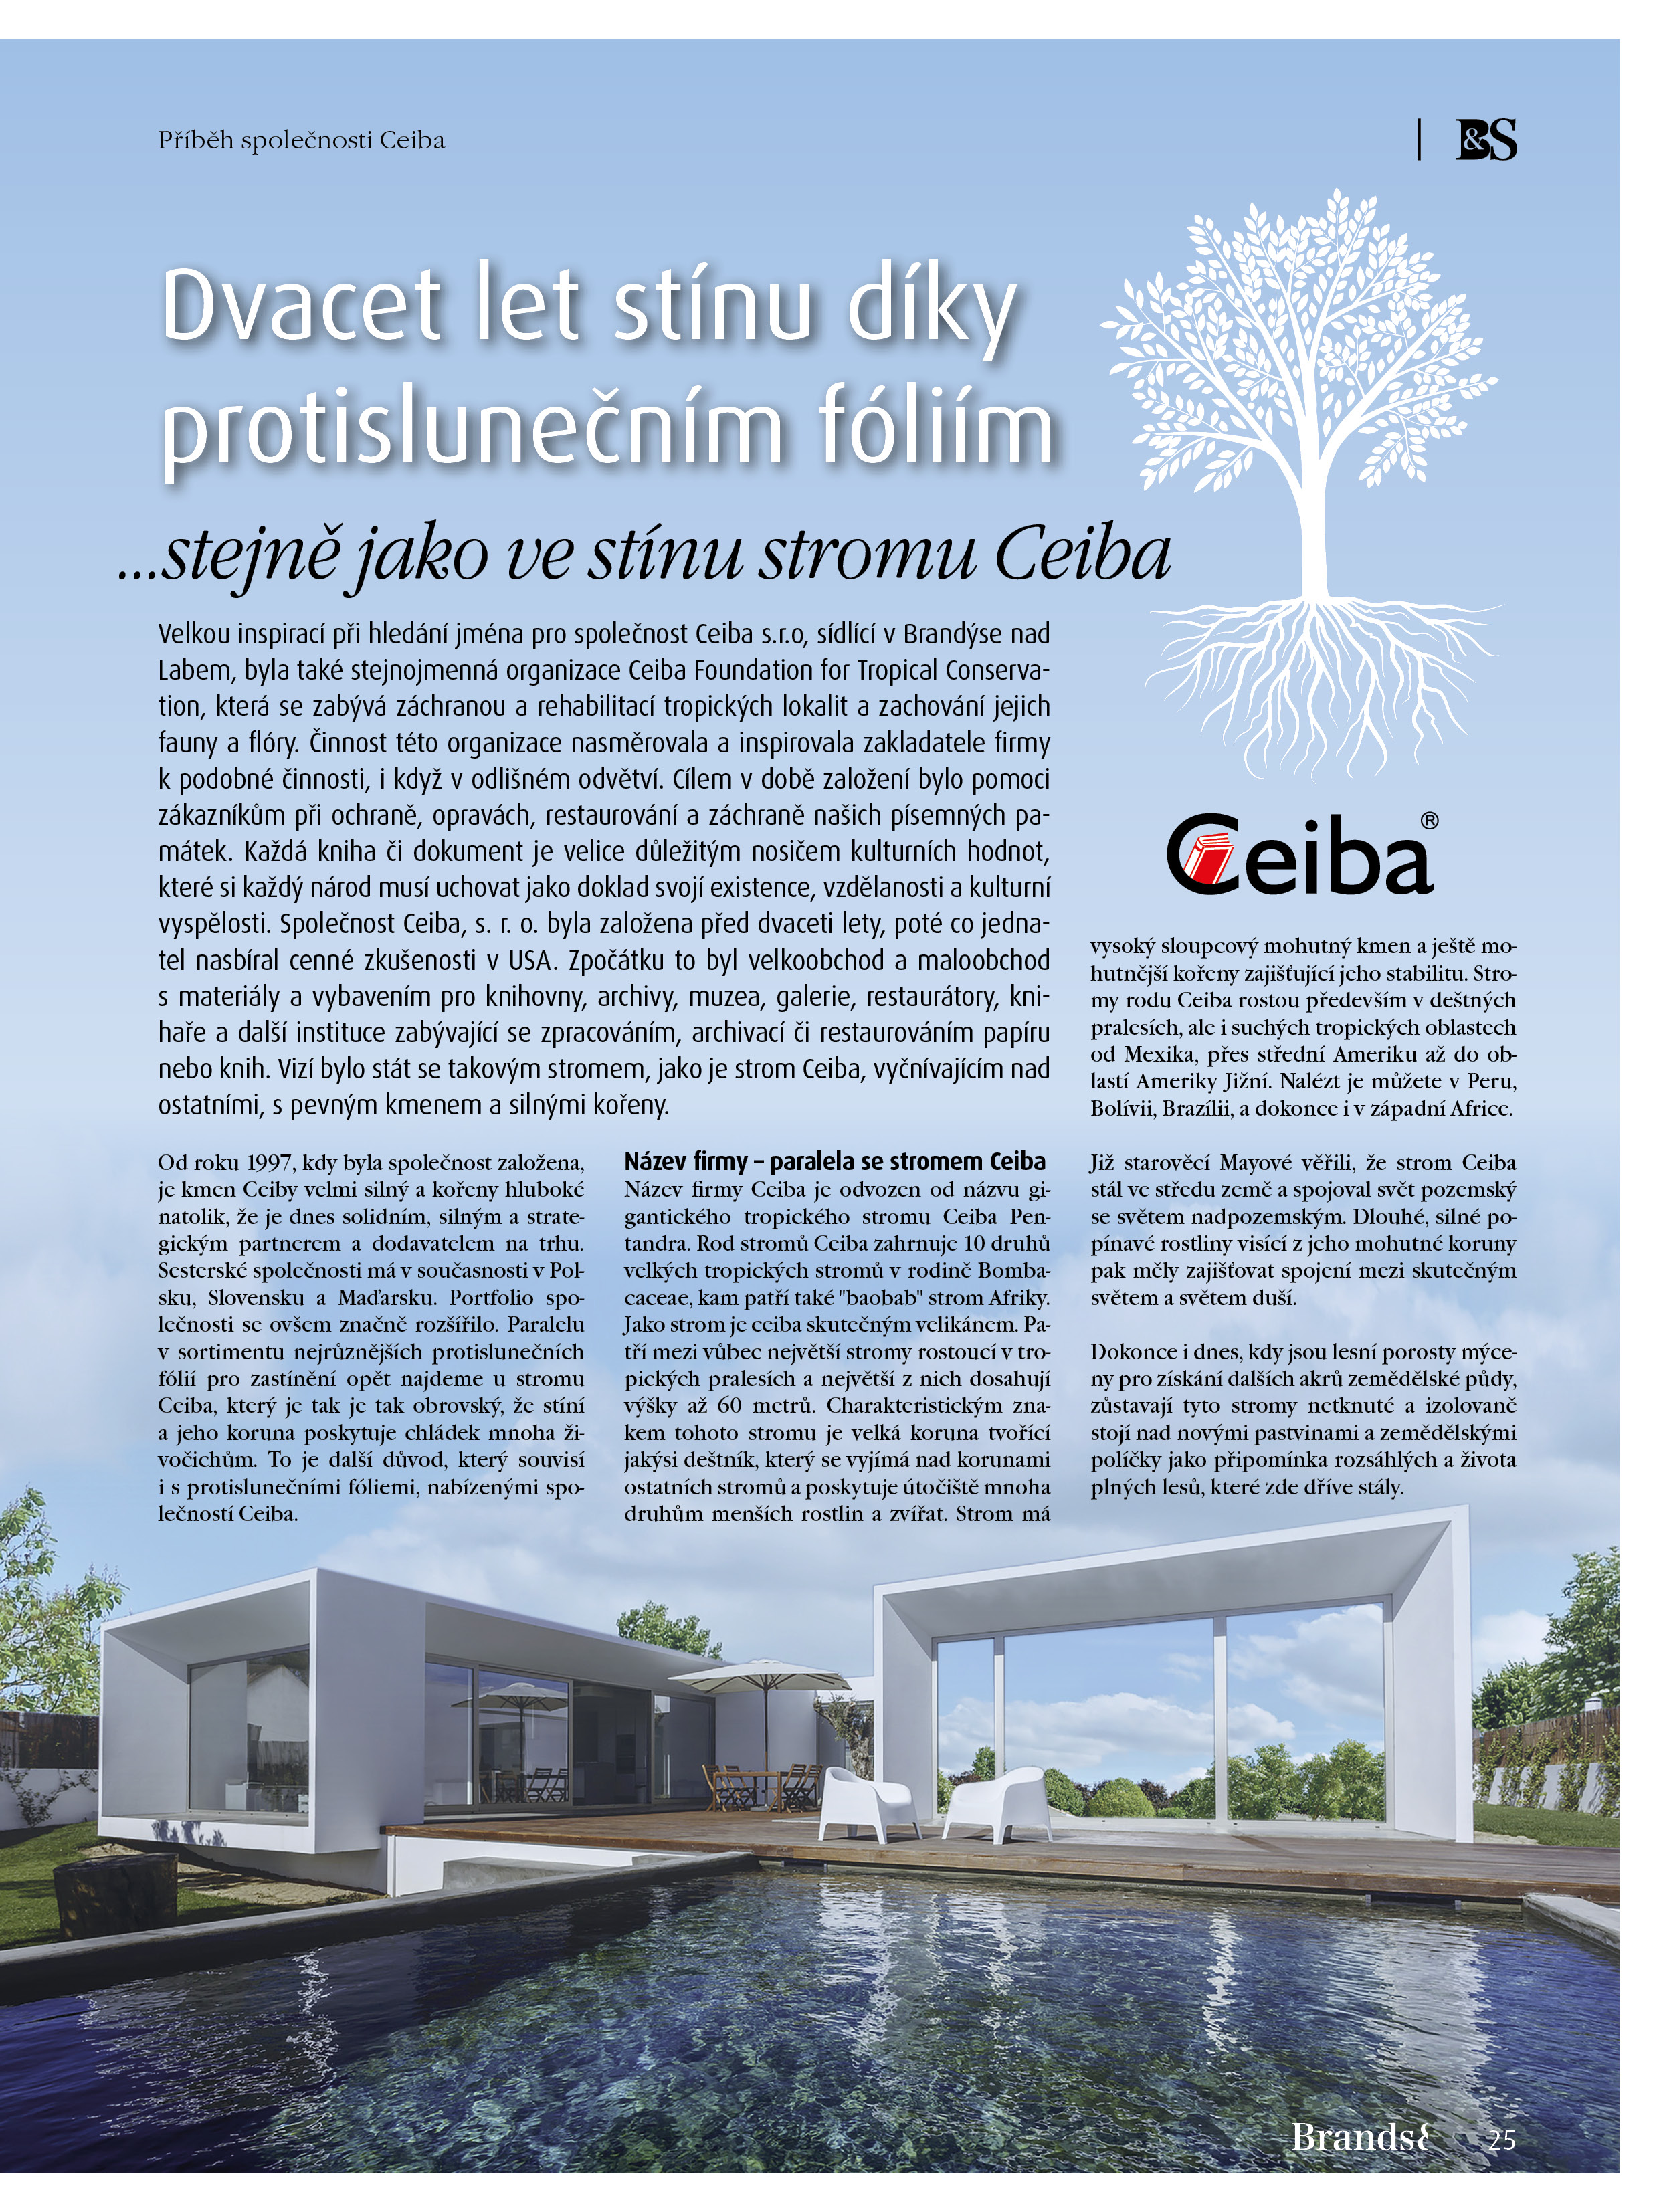 Publikace článku v časopise Brands&Stories o firmě Ceiba, s. r. o. a okenních fóliích